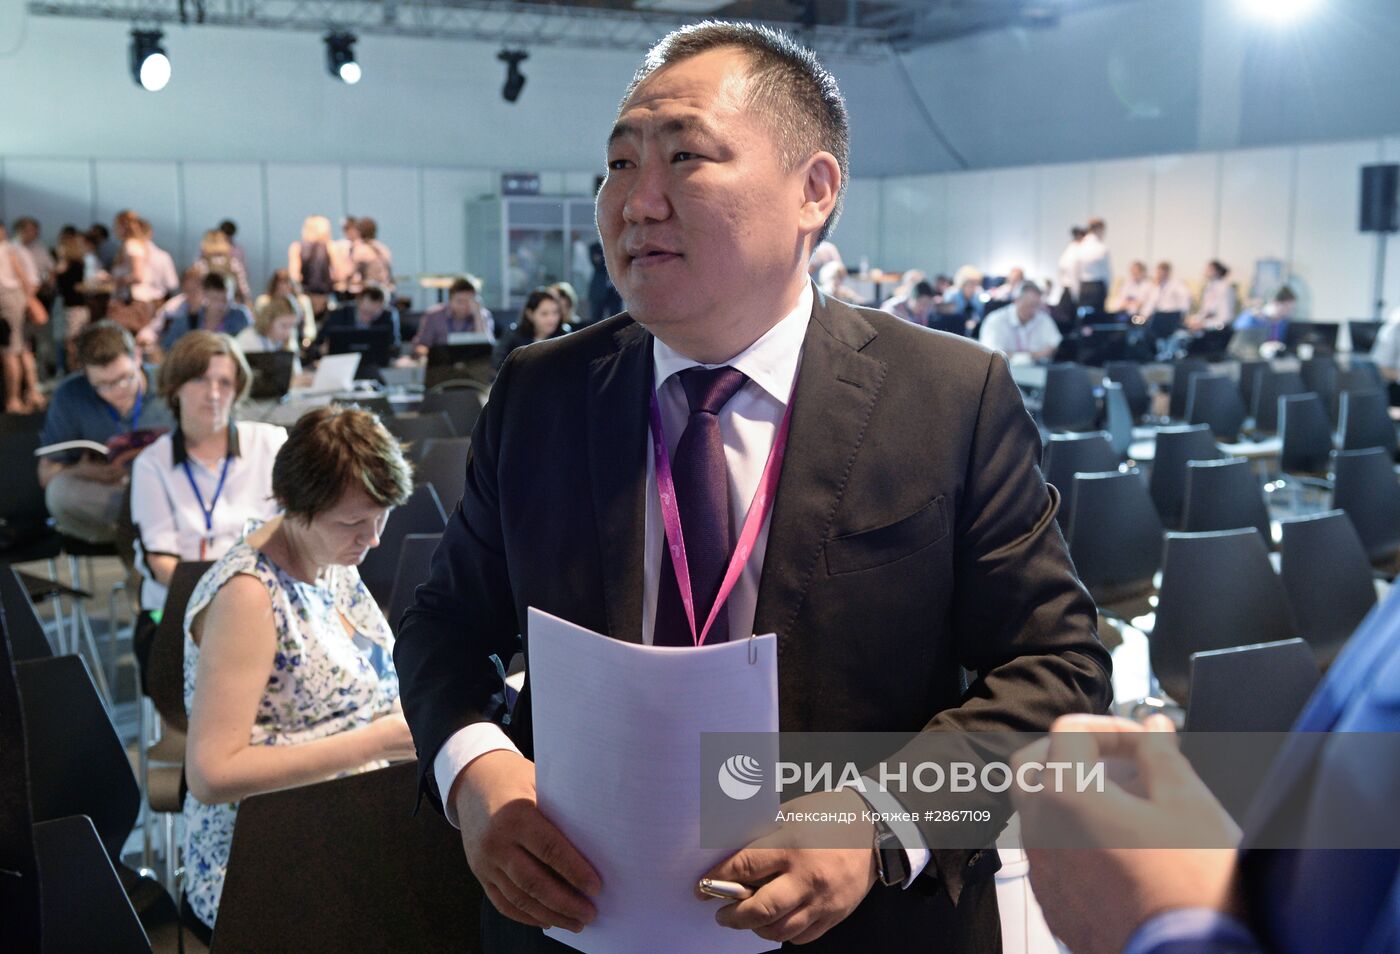 Международный форум технологического развития "Технопром-2016" в Новосибирске